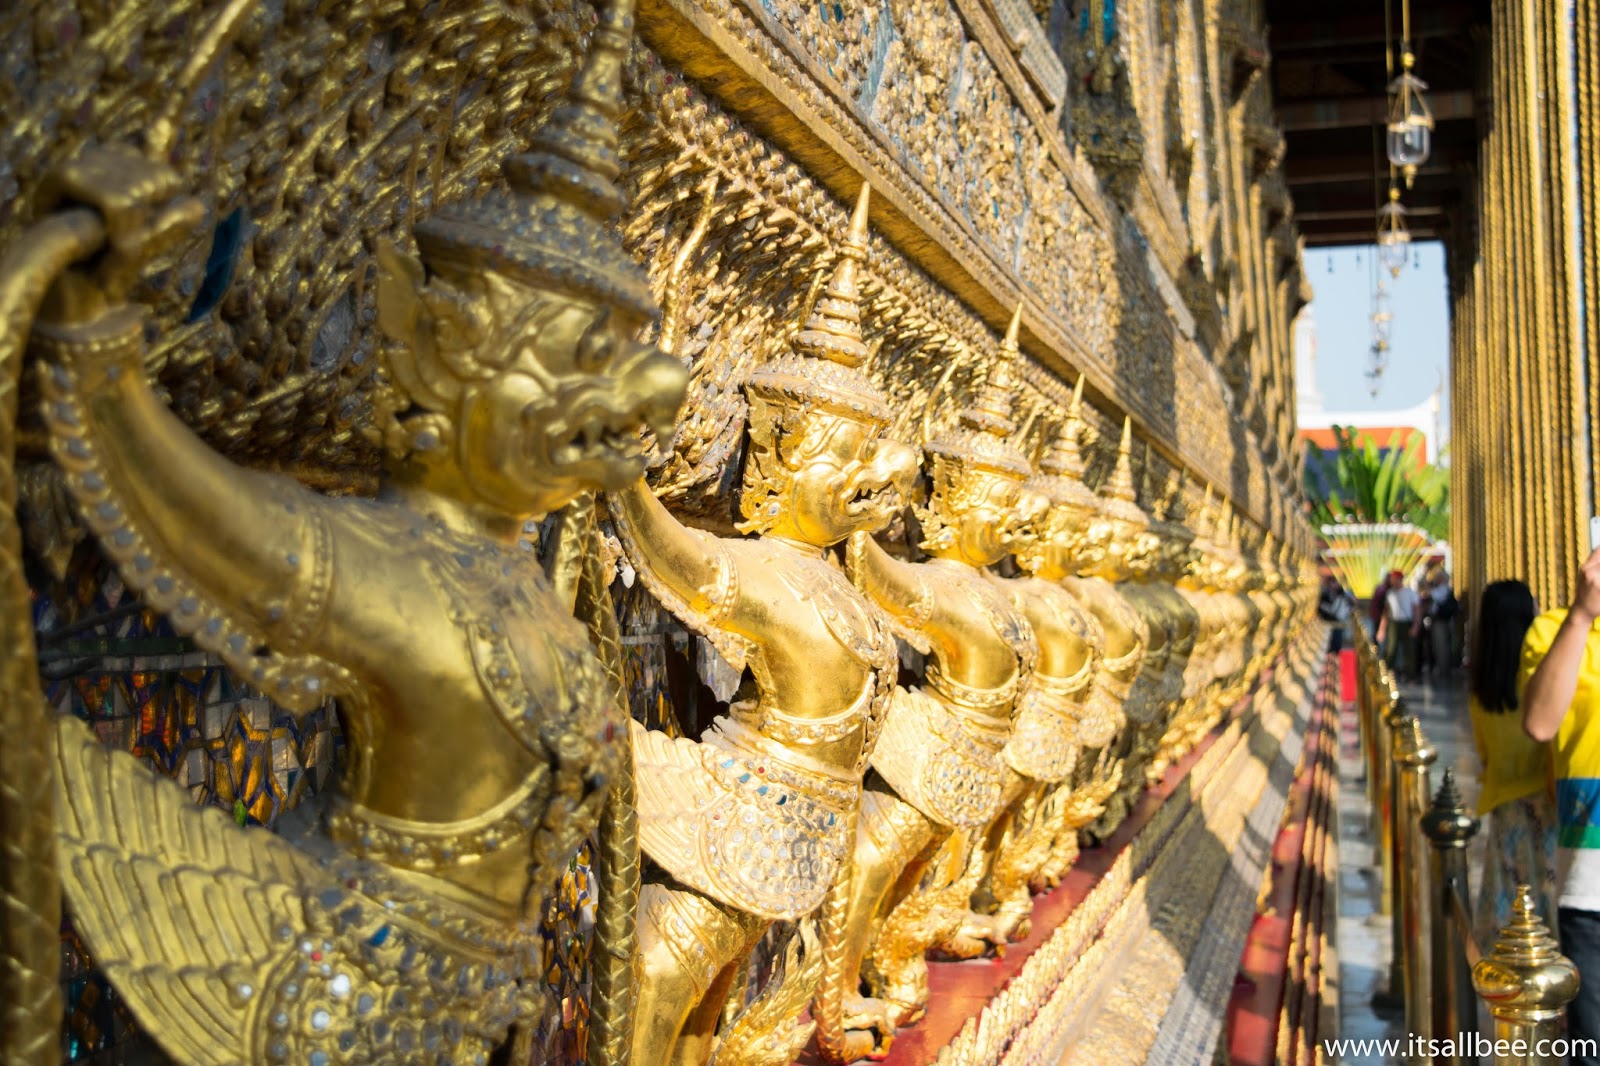 Grand Palace Bangkok | Tips For Visiting And Dress Code